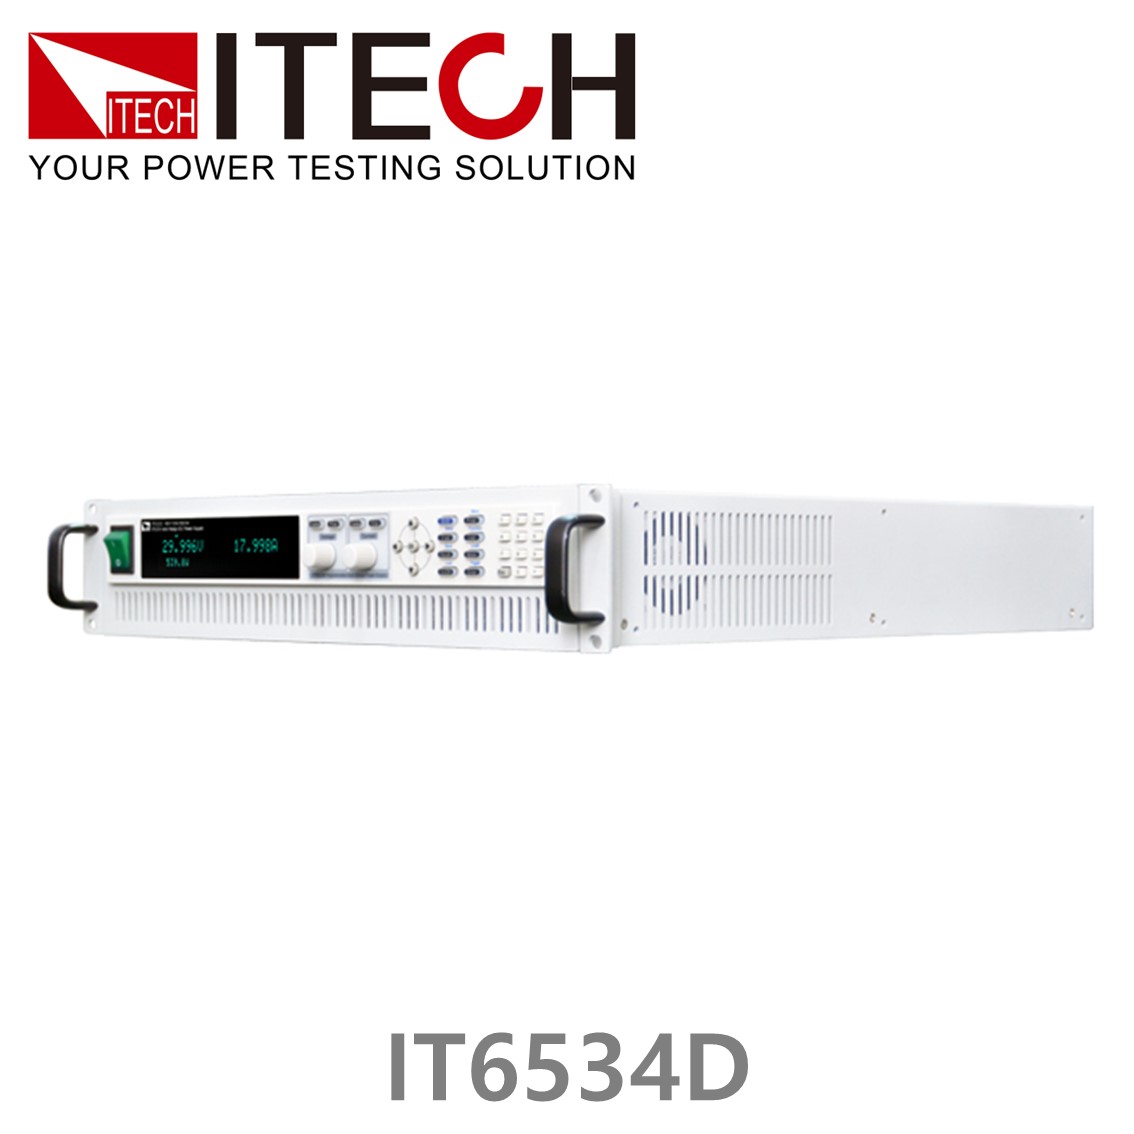 [ ITECH ] IT6534D 고전력 6000W DC파워서플라이, DC전원공급기